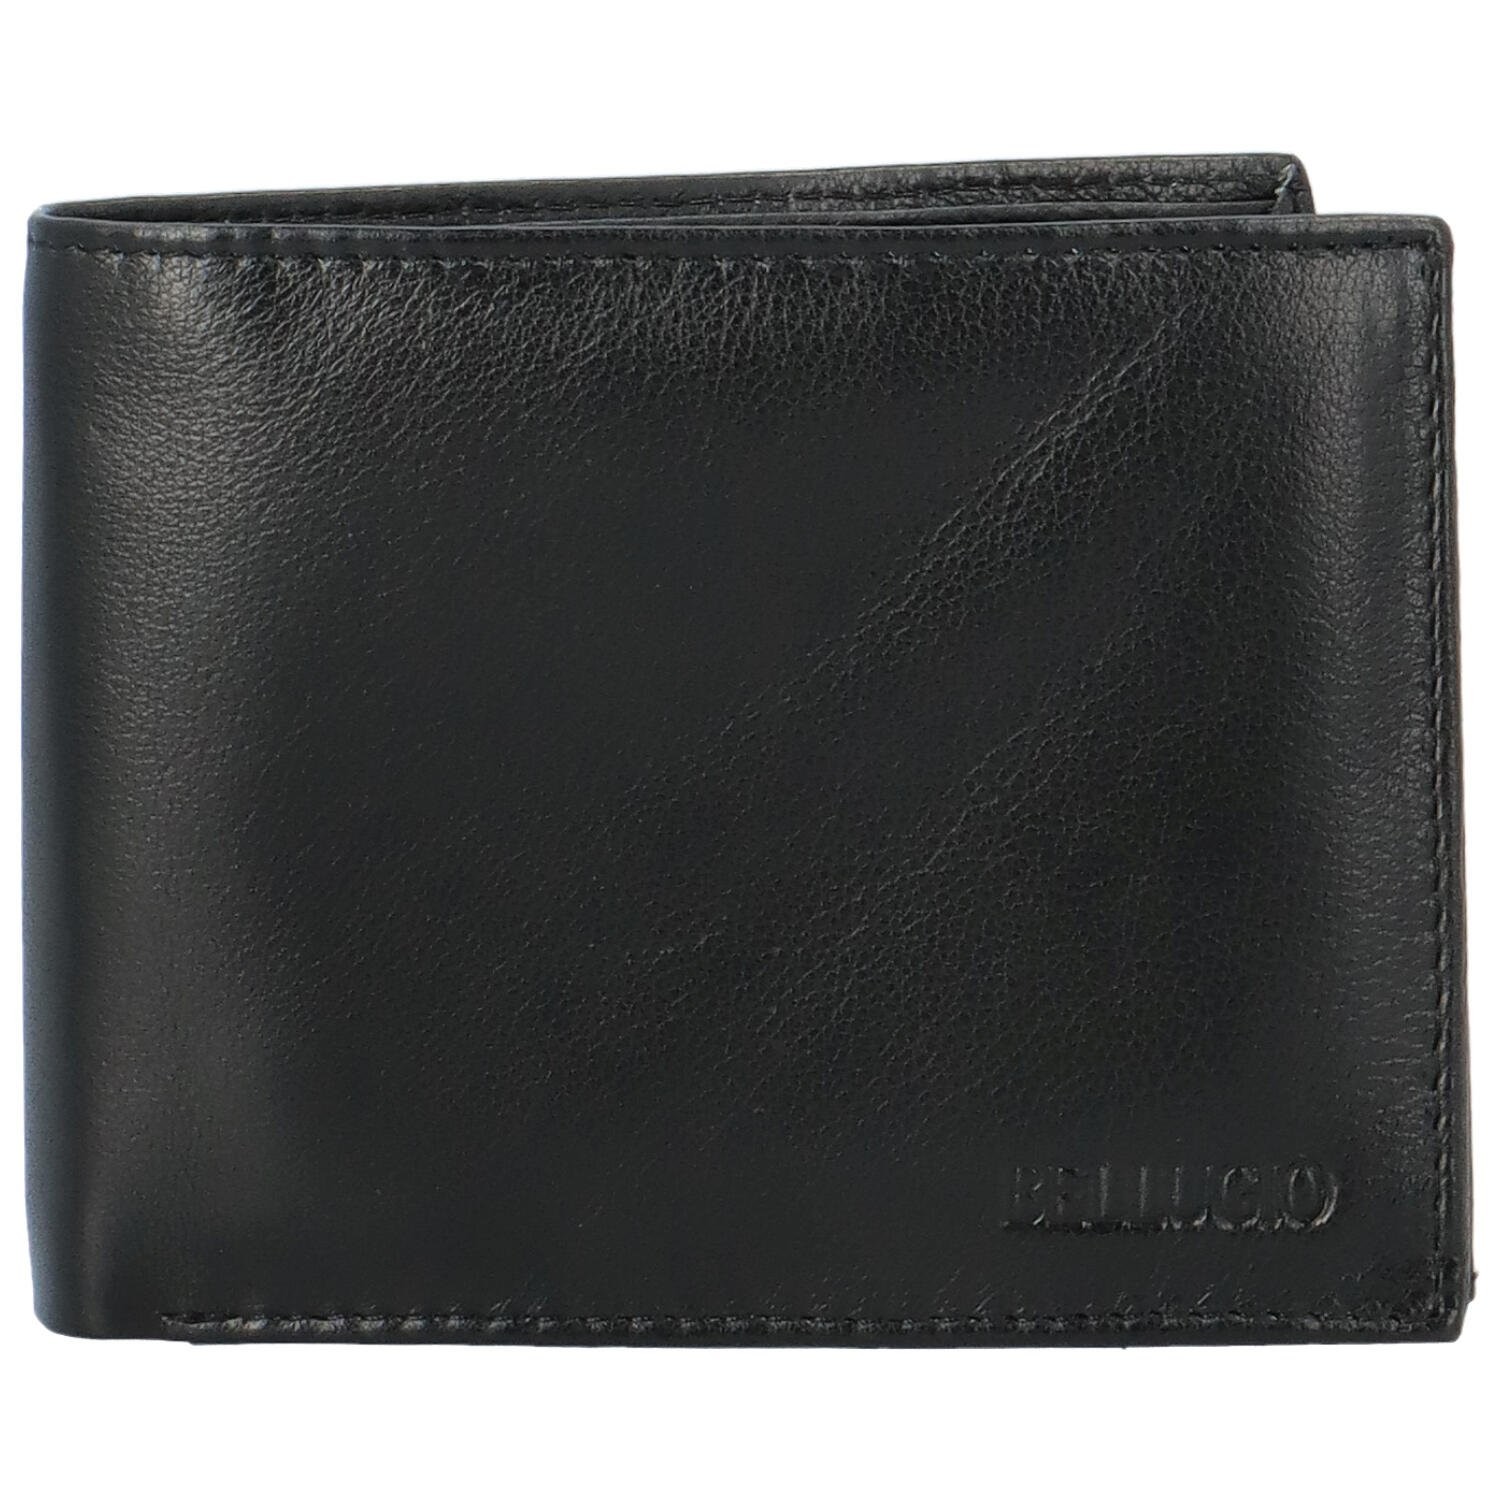 Pánská kožená peněženka černá - Bellugio Santian černá